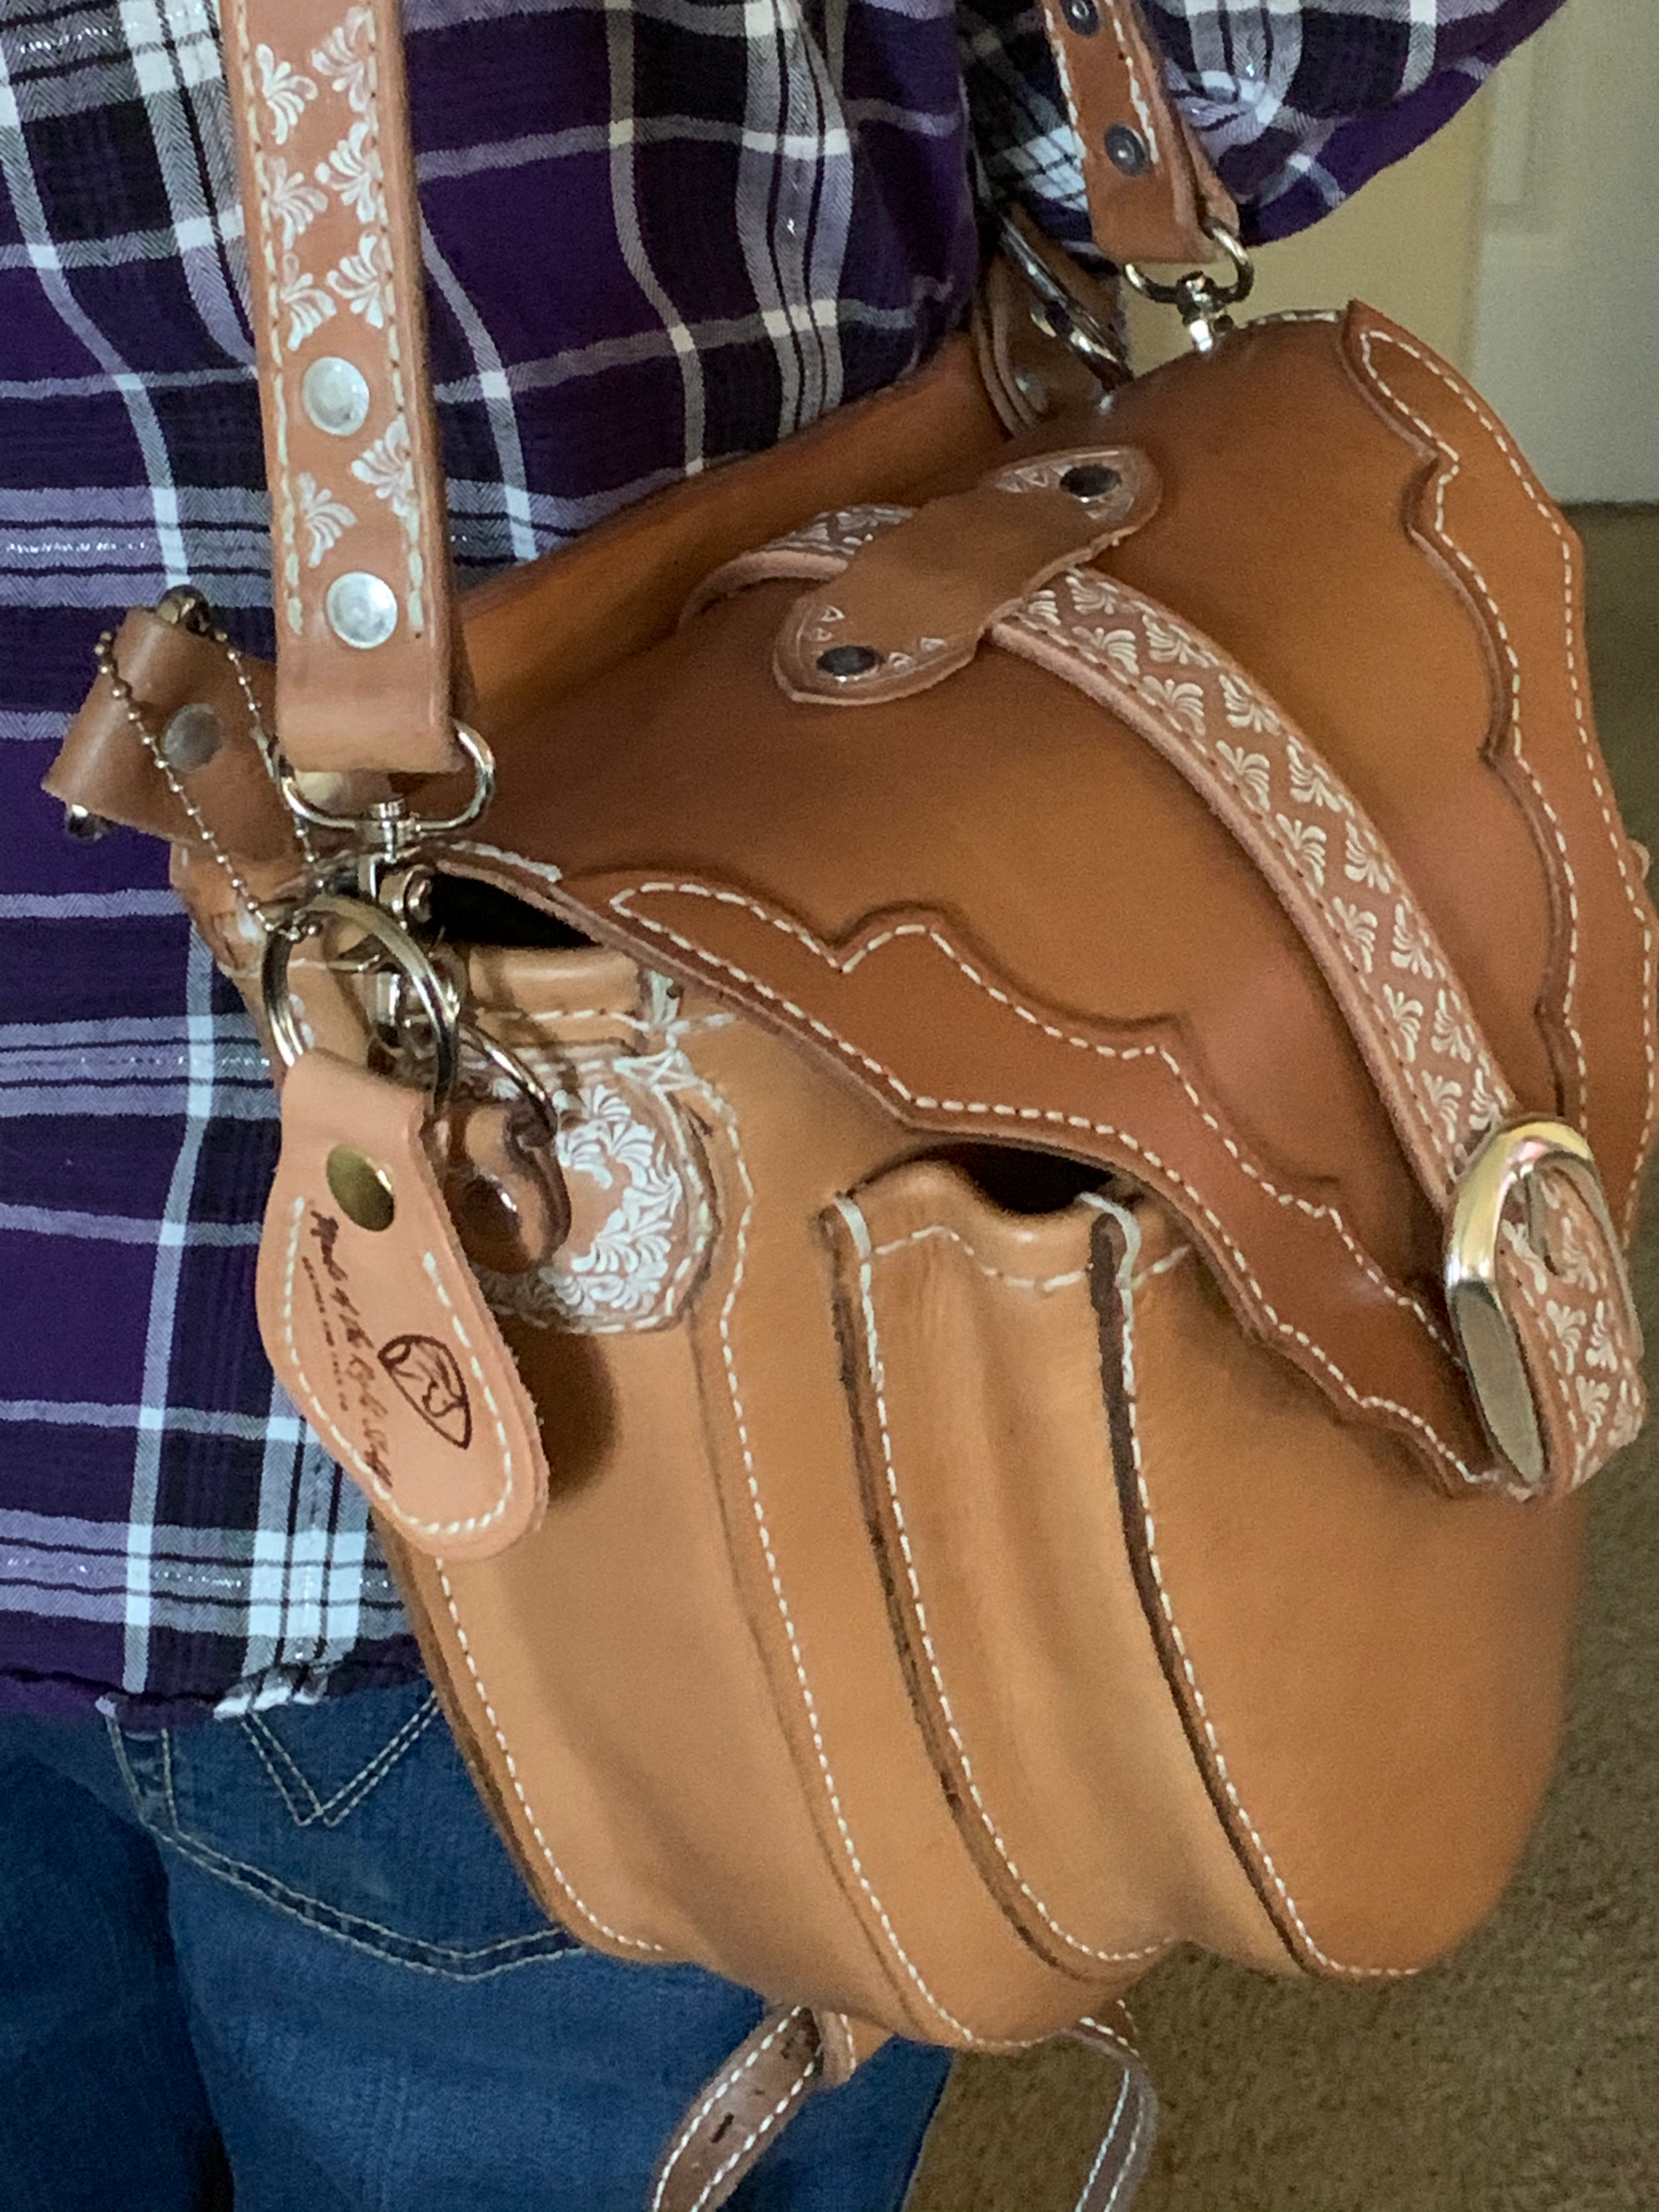 Designer Western Leather Shoulder Handbags Purse For Women